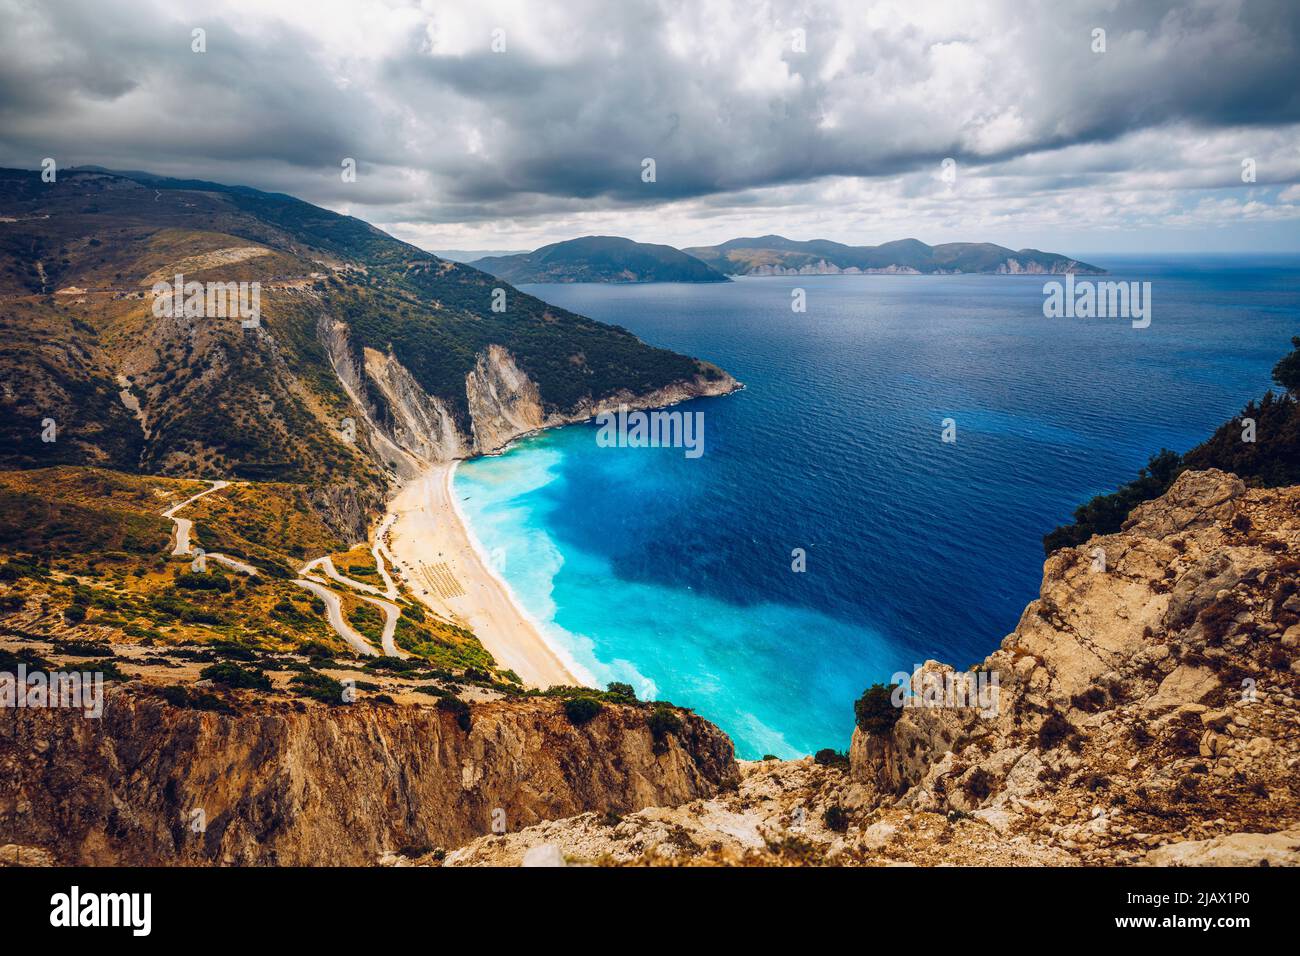 Vue aérienne de drone de la baie turquoise et saphir iconique et de la plage de Myrtos, île de Kefalonia (Céphalonie), Ionienne, Grèce. Plage de Myrtos, Kefalonia isl Banque D'Images